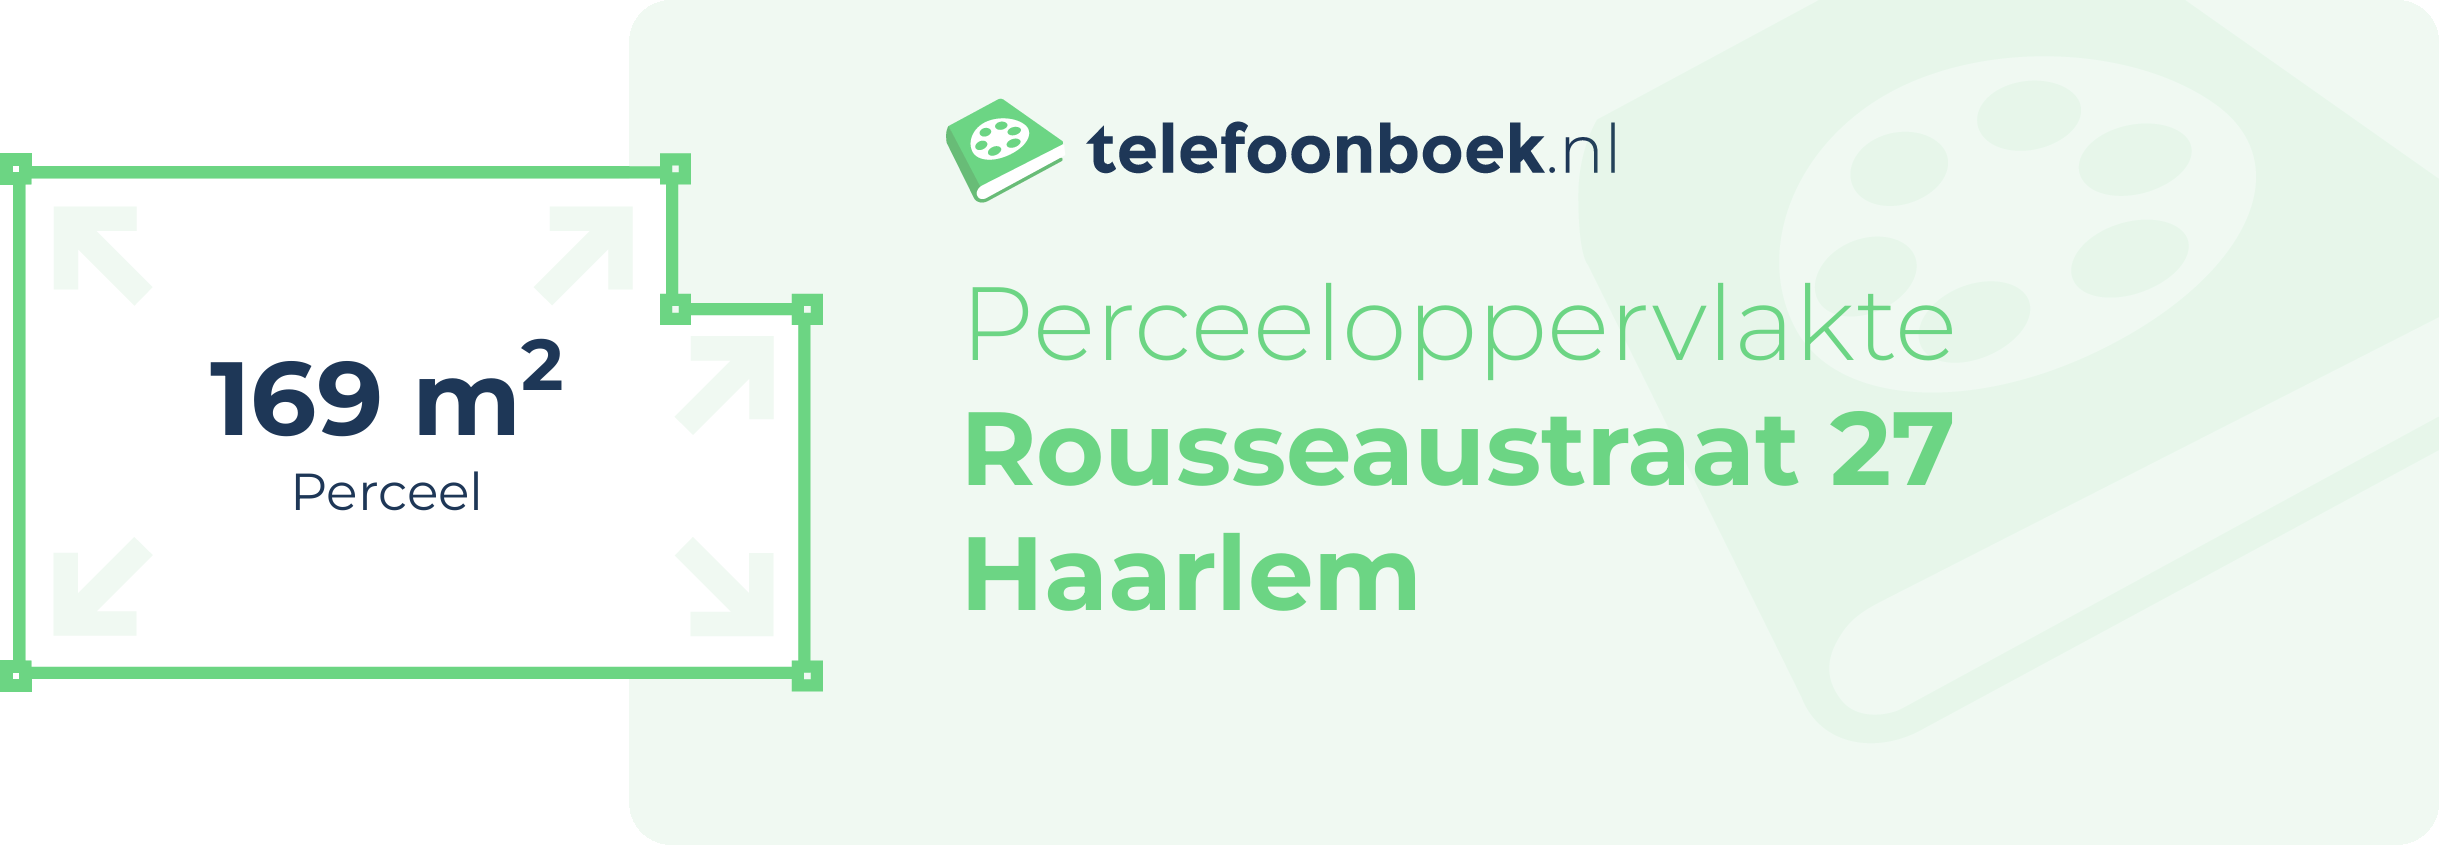 Perceeloppervlakte Rousseaustraat 27 Haarlem